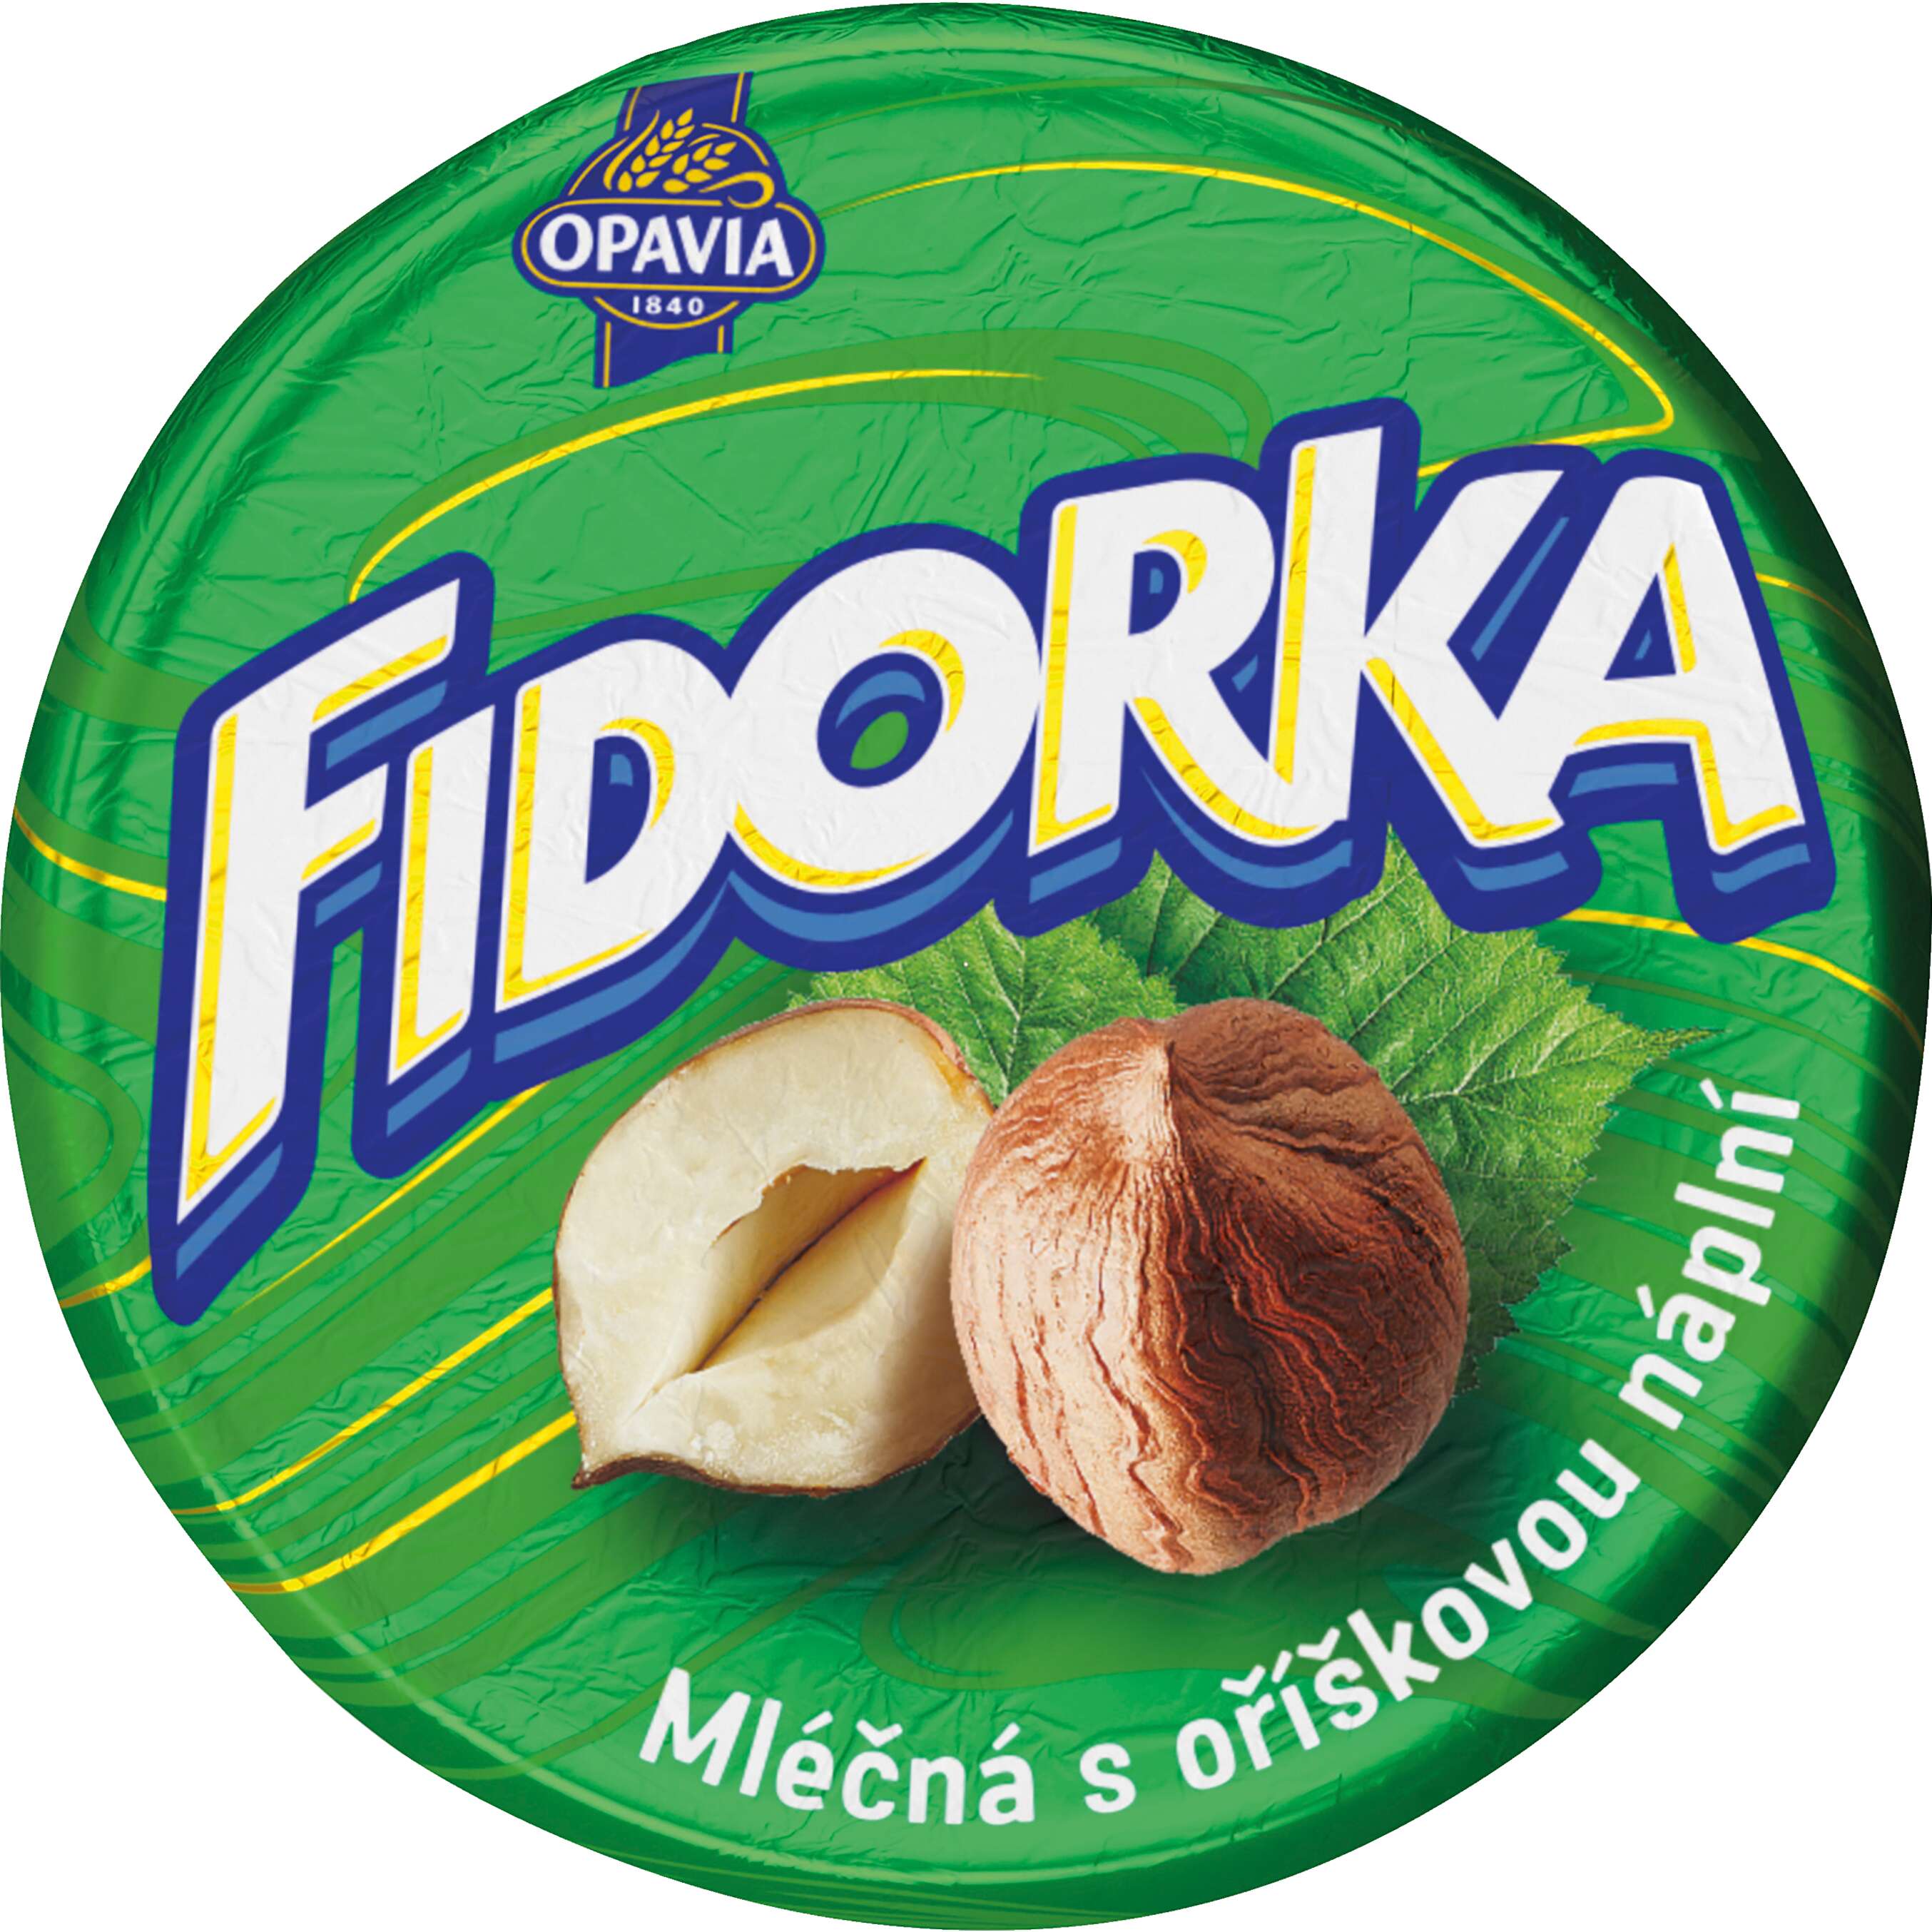 Zobrazenie výrobku Opavia Fidorka Oblátka v čokoláde